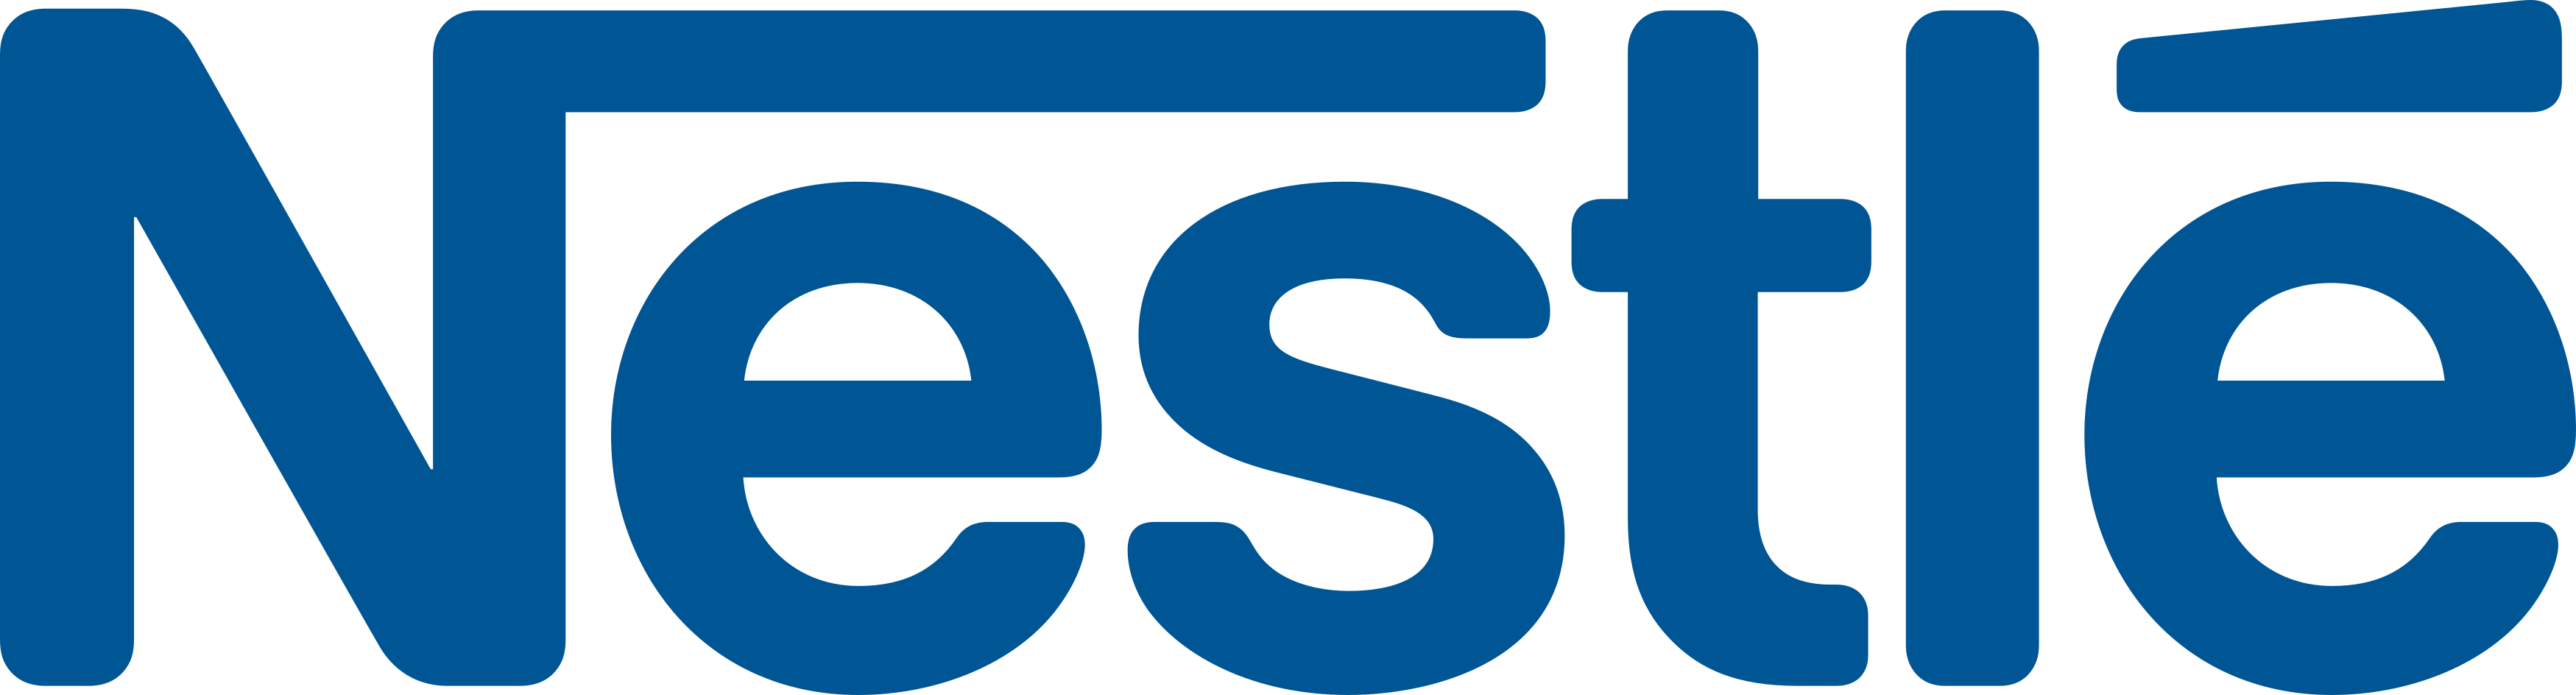 Nestlé Logo 3.png 6 De Novembro De 2016 106 Kb 3499 × 944 - Nestle, Transparent background PNG HD thumbnail